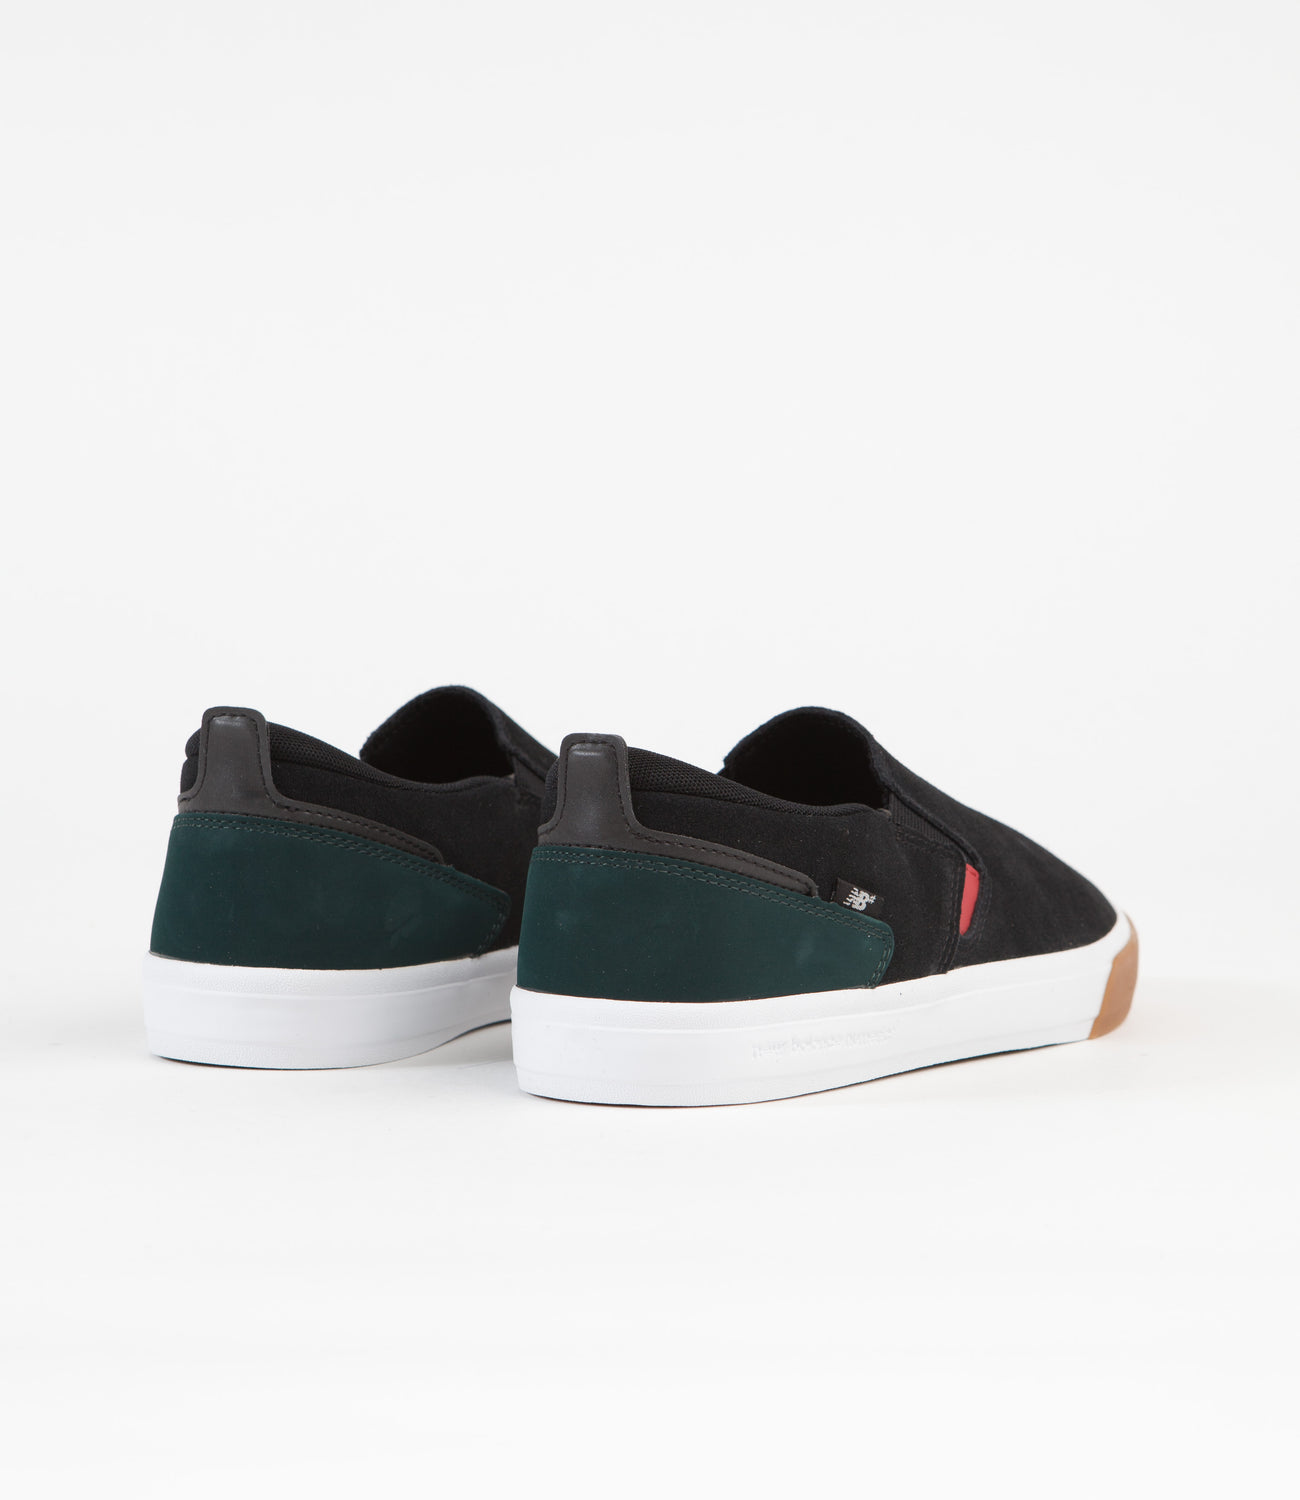 New Balance Numeric 306 Jamie Foy Slip On Shoes - Black / White | Flatspot